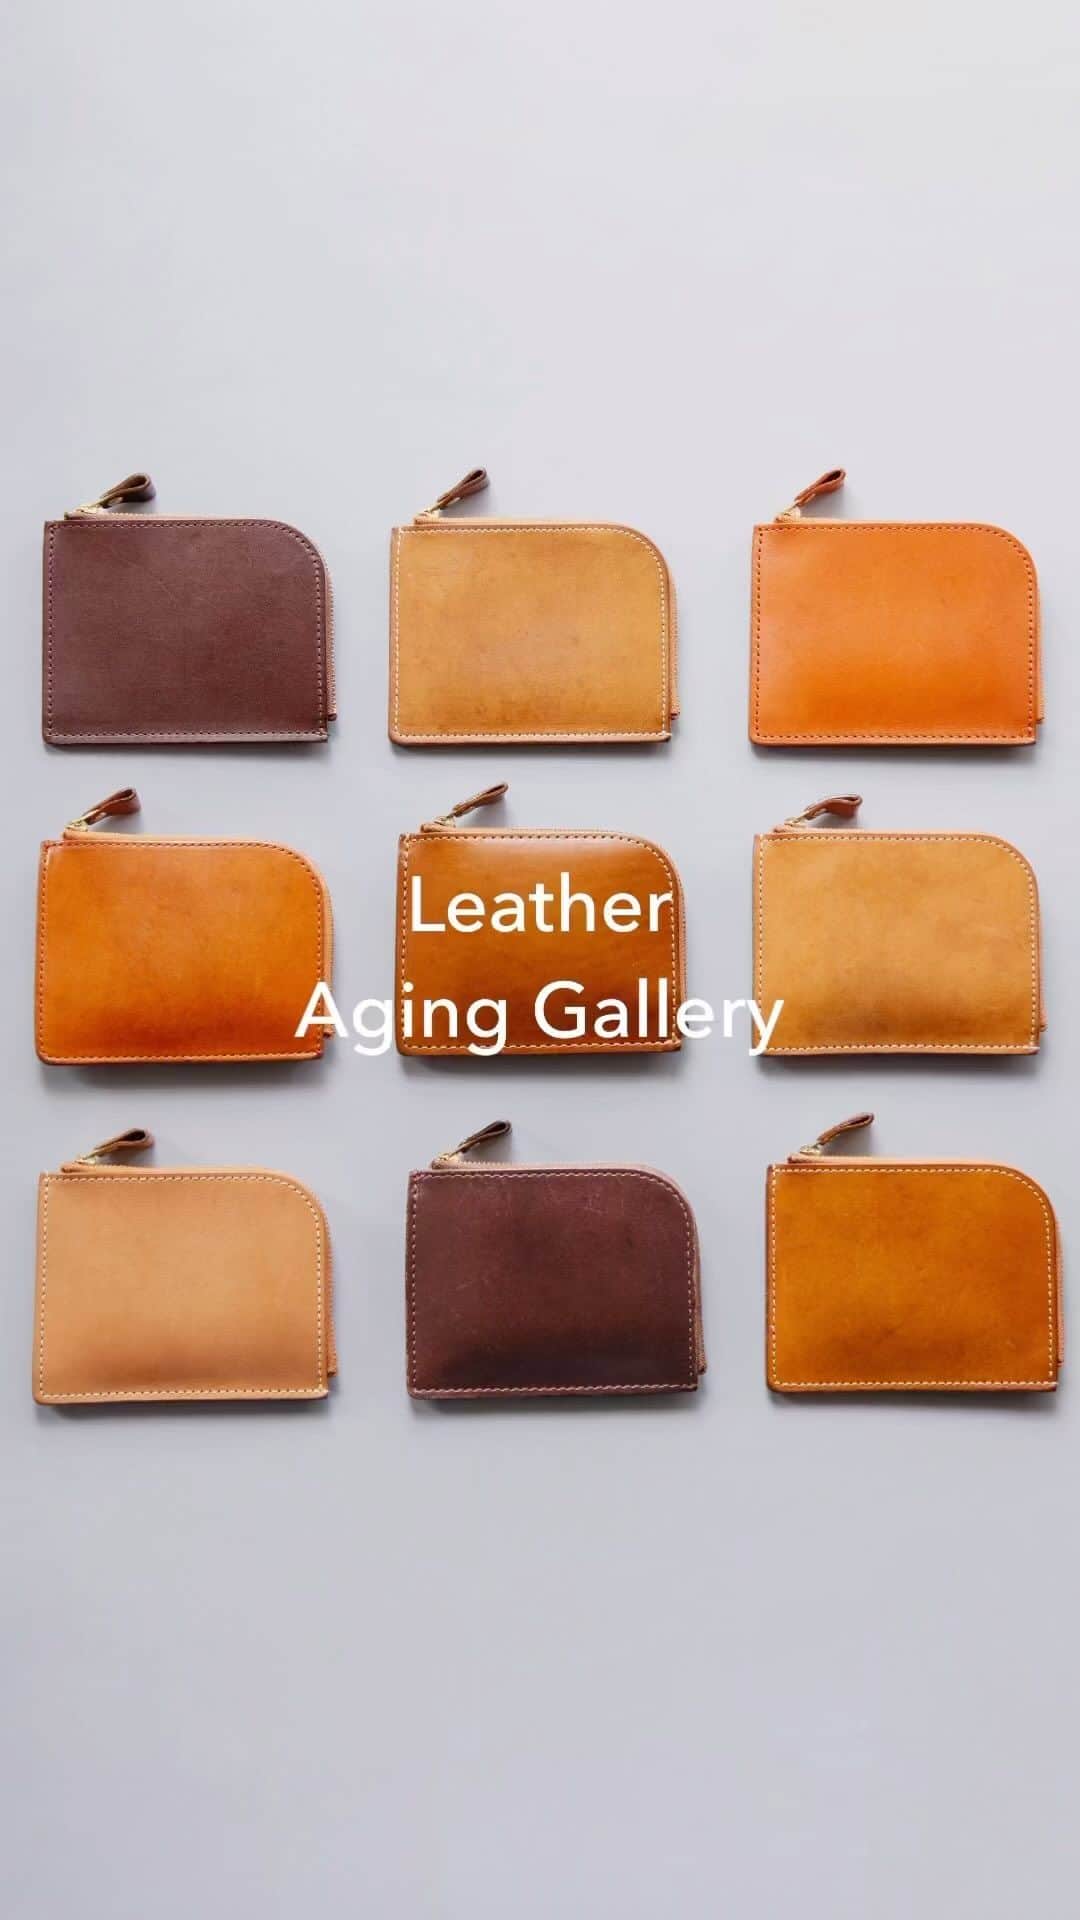 土屋鞄のインスタグラム：「Leather Aging Gallery vol.2  ただ古びていくのではなく、使うほど自分の「味」がでる。 革の愉しさを語る、愛用品ををまとめました。  #土屋鞄 #革 #革鞄 #革製品 #トートバッグ #革財布 #ミニ財布 #コンパクト財布 #Lファスナー #経年変化 #レザーエイジング #leather #leatherbag #totebag #leatherwallet #craftsmanship #creativity #timeless #madeinjapan #TSUCHIYAKABAN」